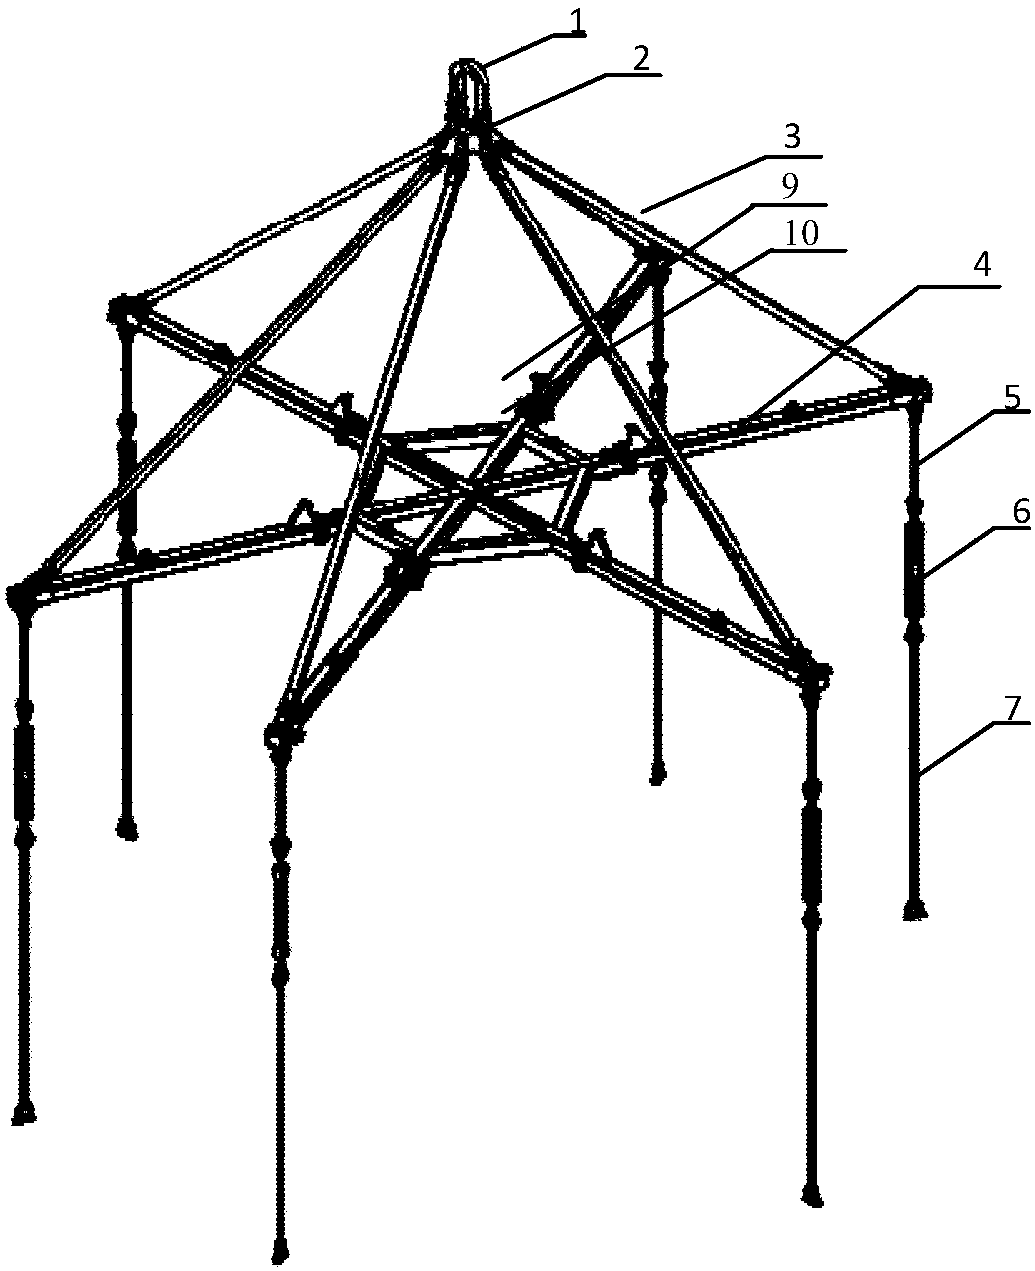 Large-span folding type umbrella-shaped lifting device